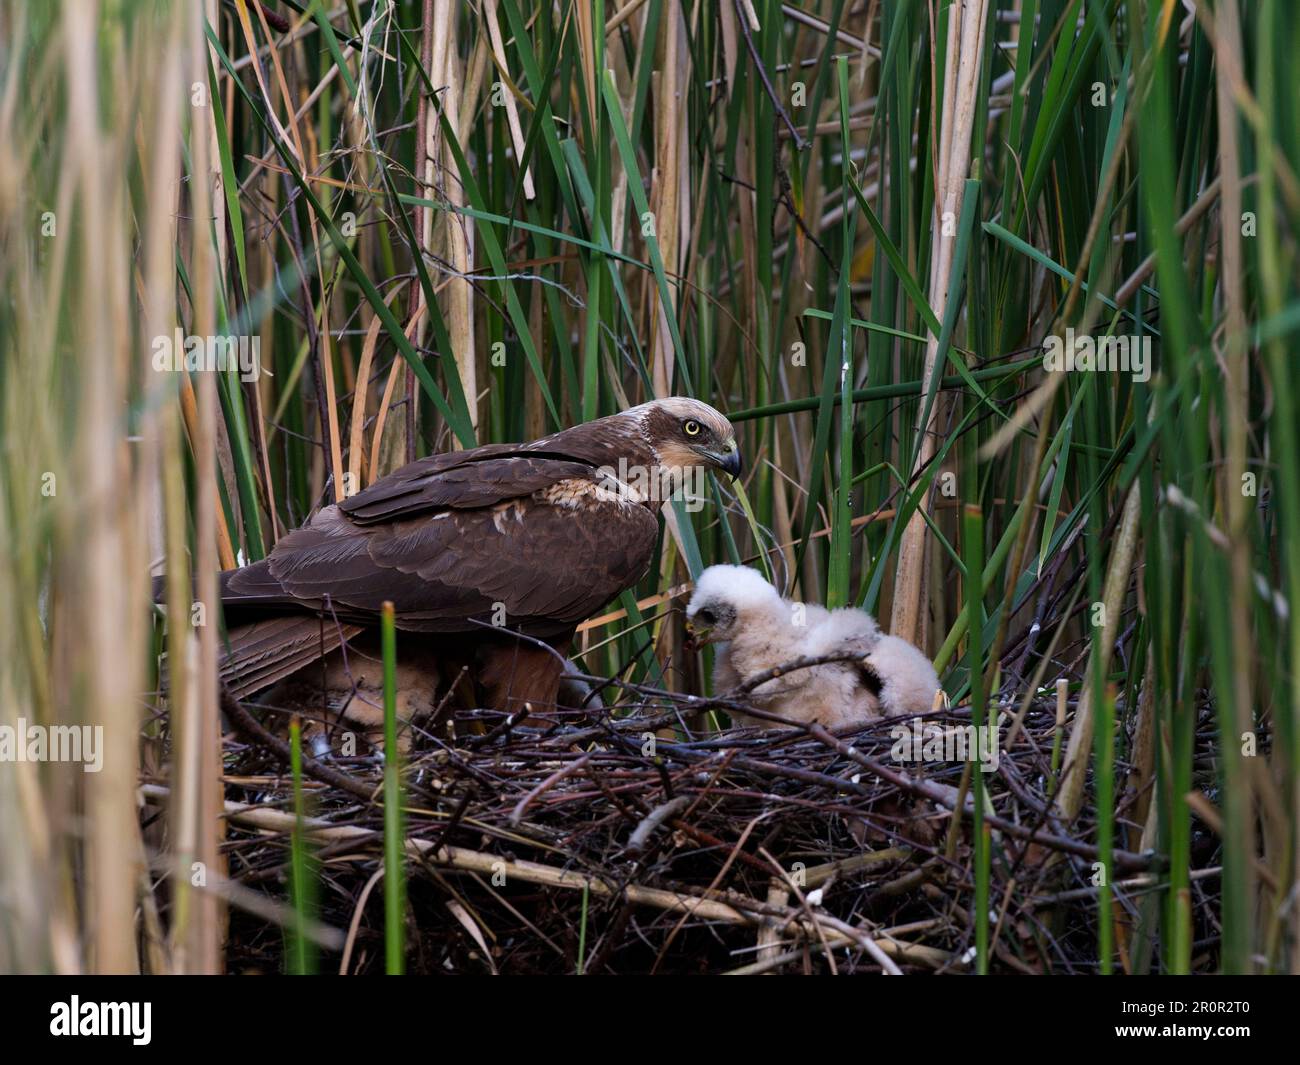 Western marsh harrier (Circus aeruginosus), at the nest with chicks Stock Photo